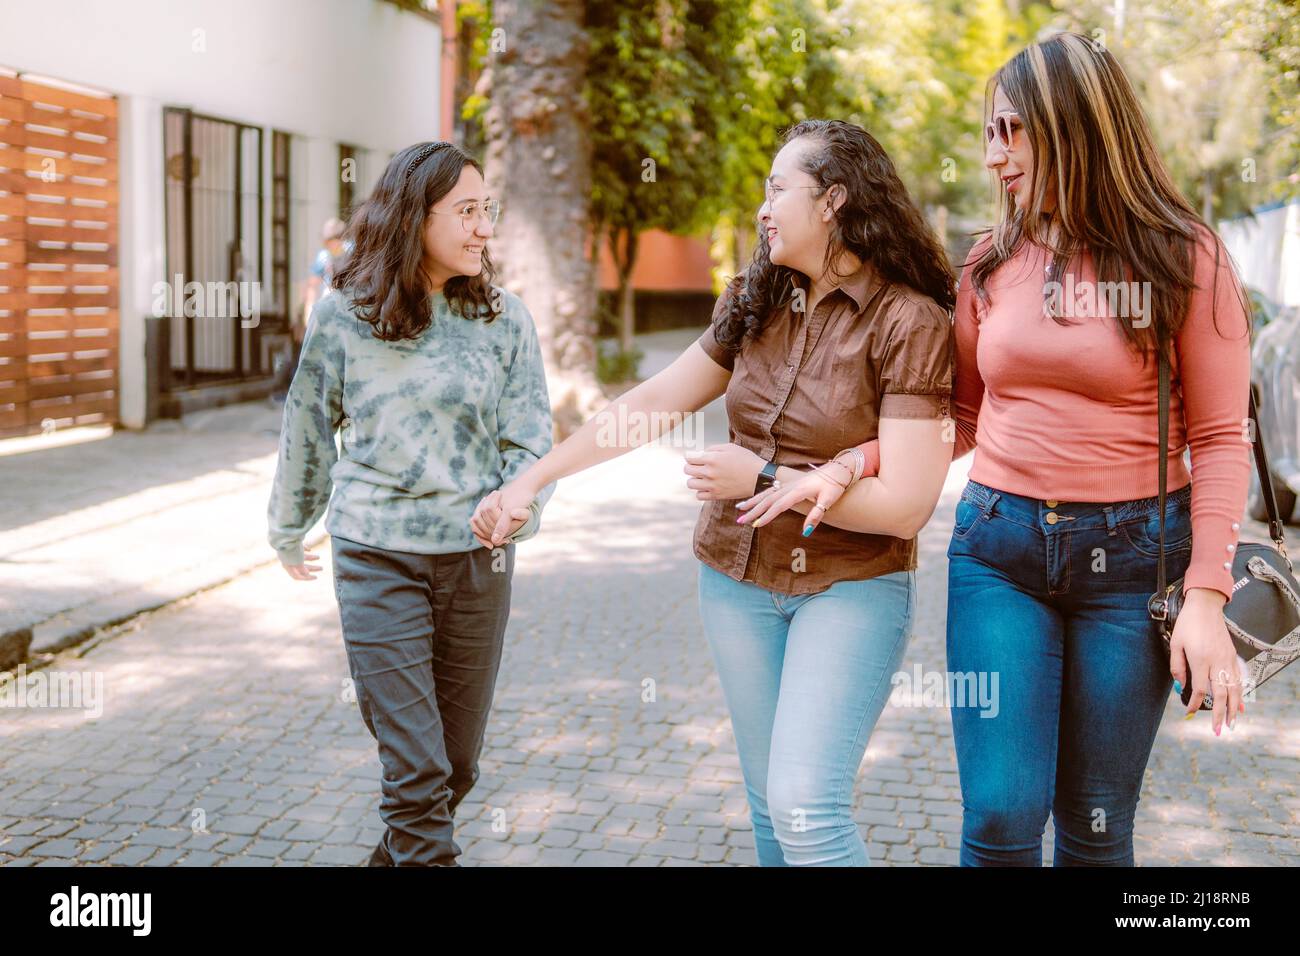 Tres mujeres jóvenes caminan por la calle, están sonriendo, jugando y pasándose bien. Foto de stock